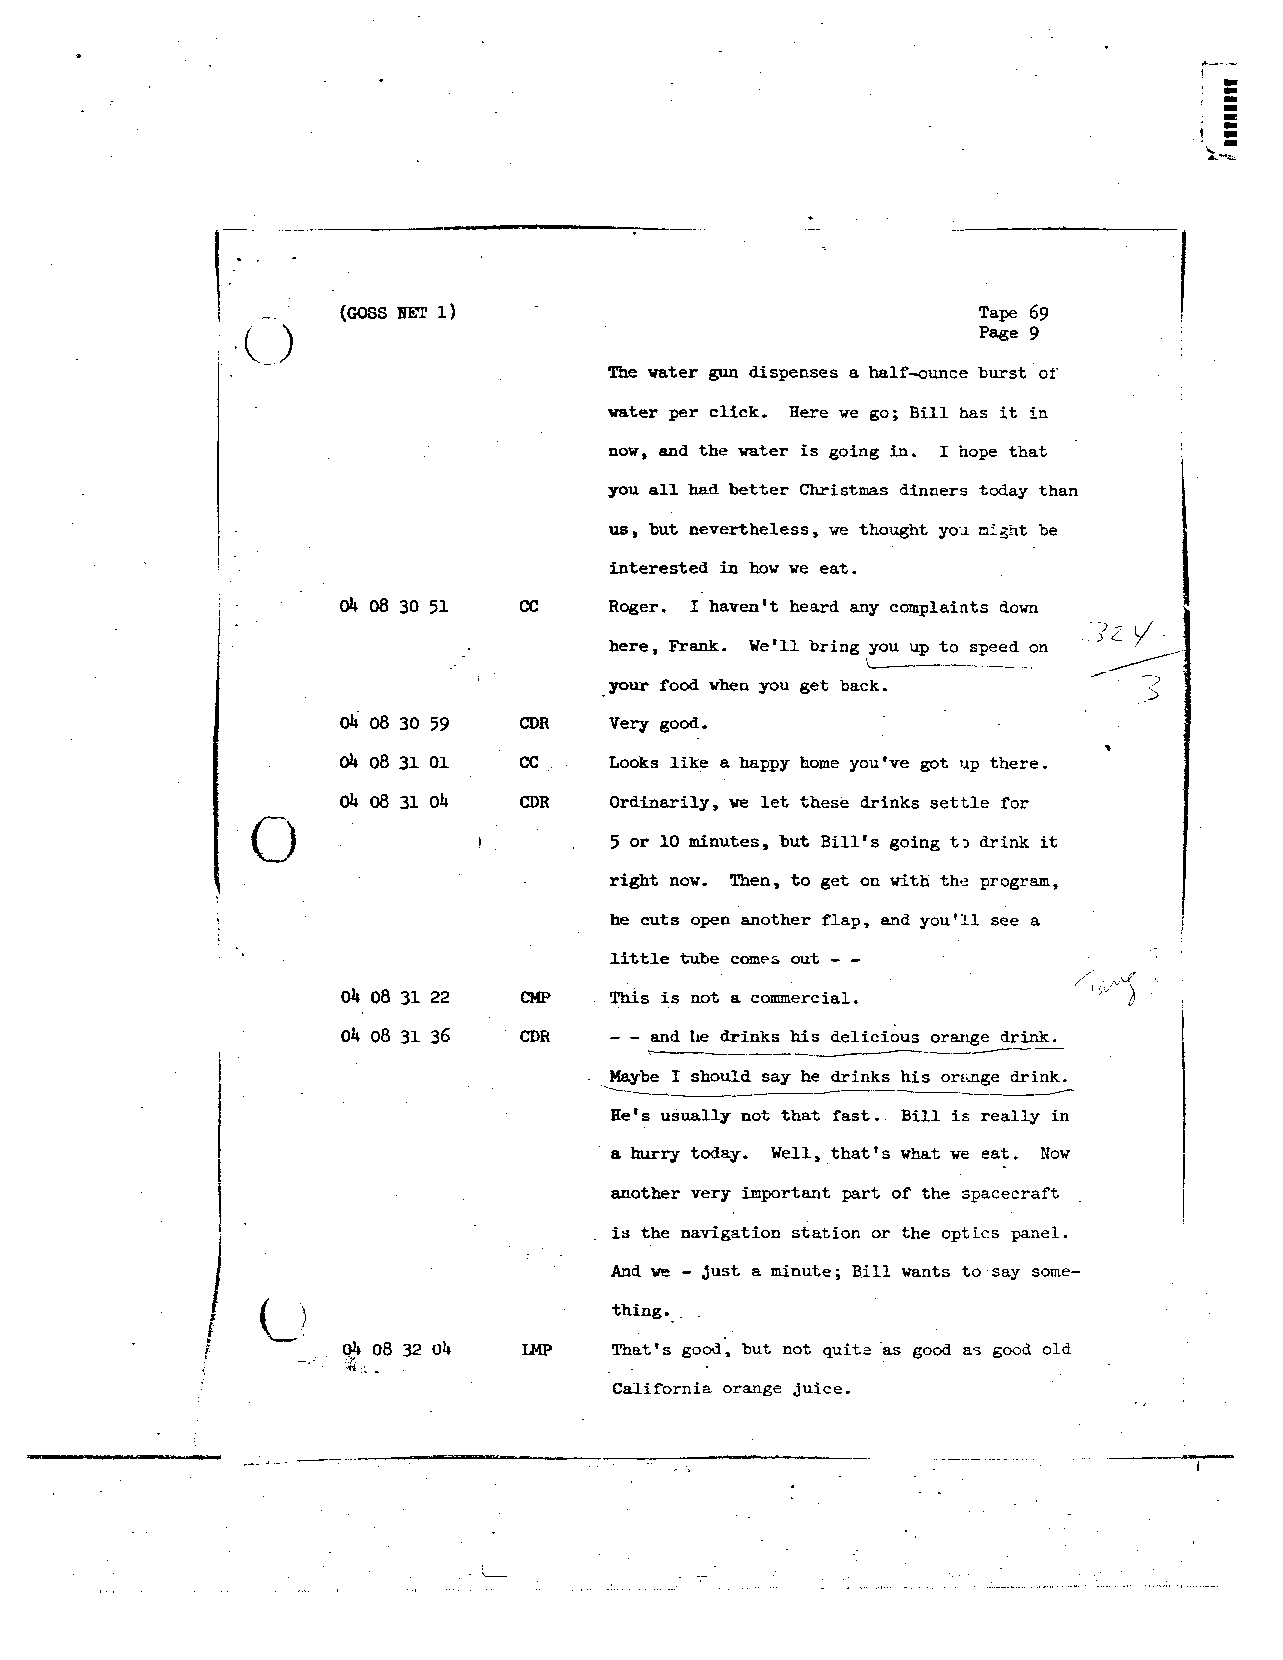 Page 555 of Apollo 8’s original transcript